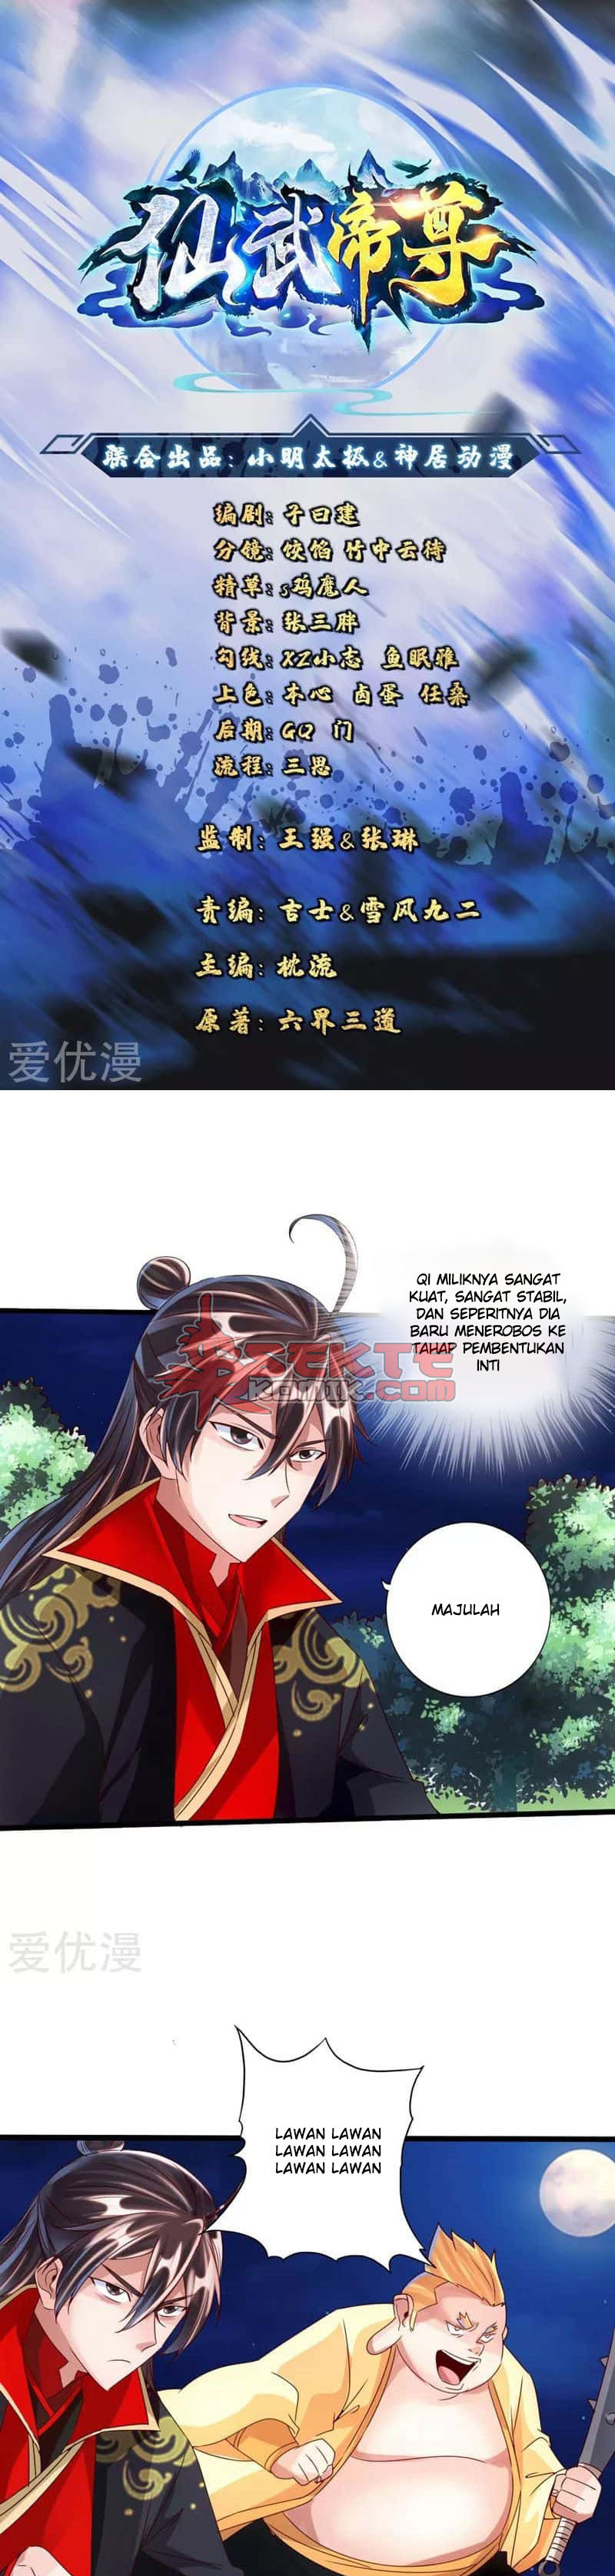 Xianwu Dizun Chapter 42